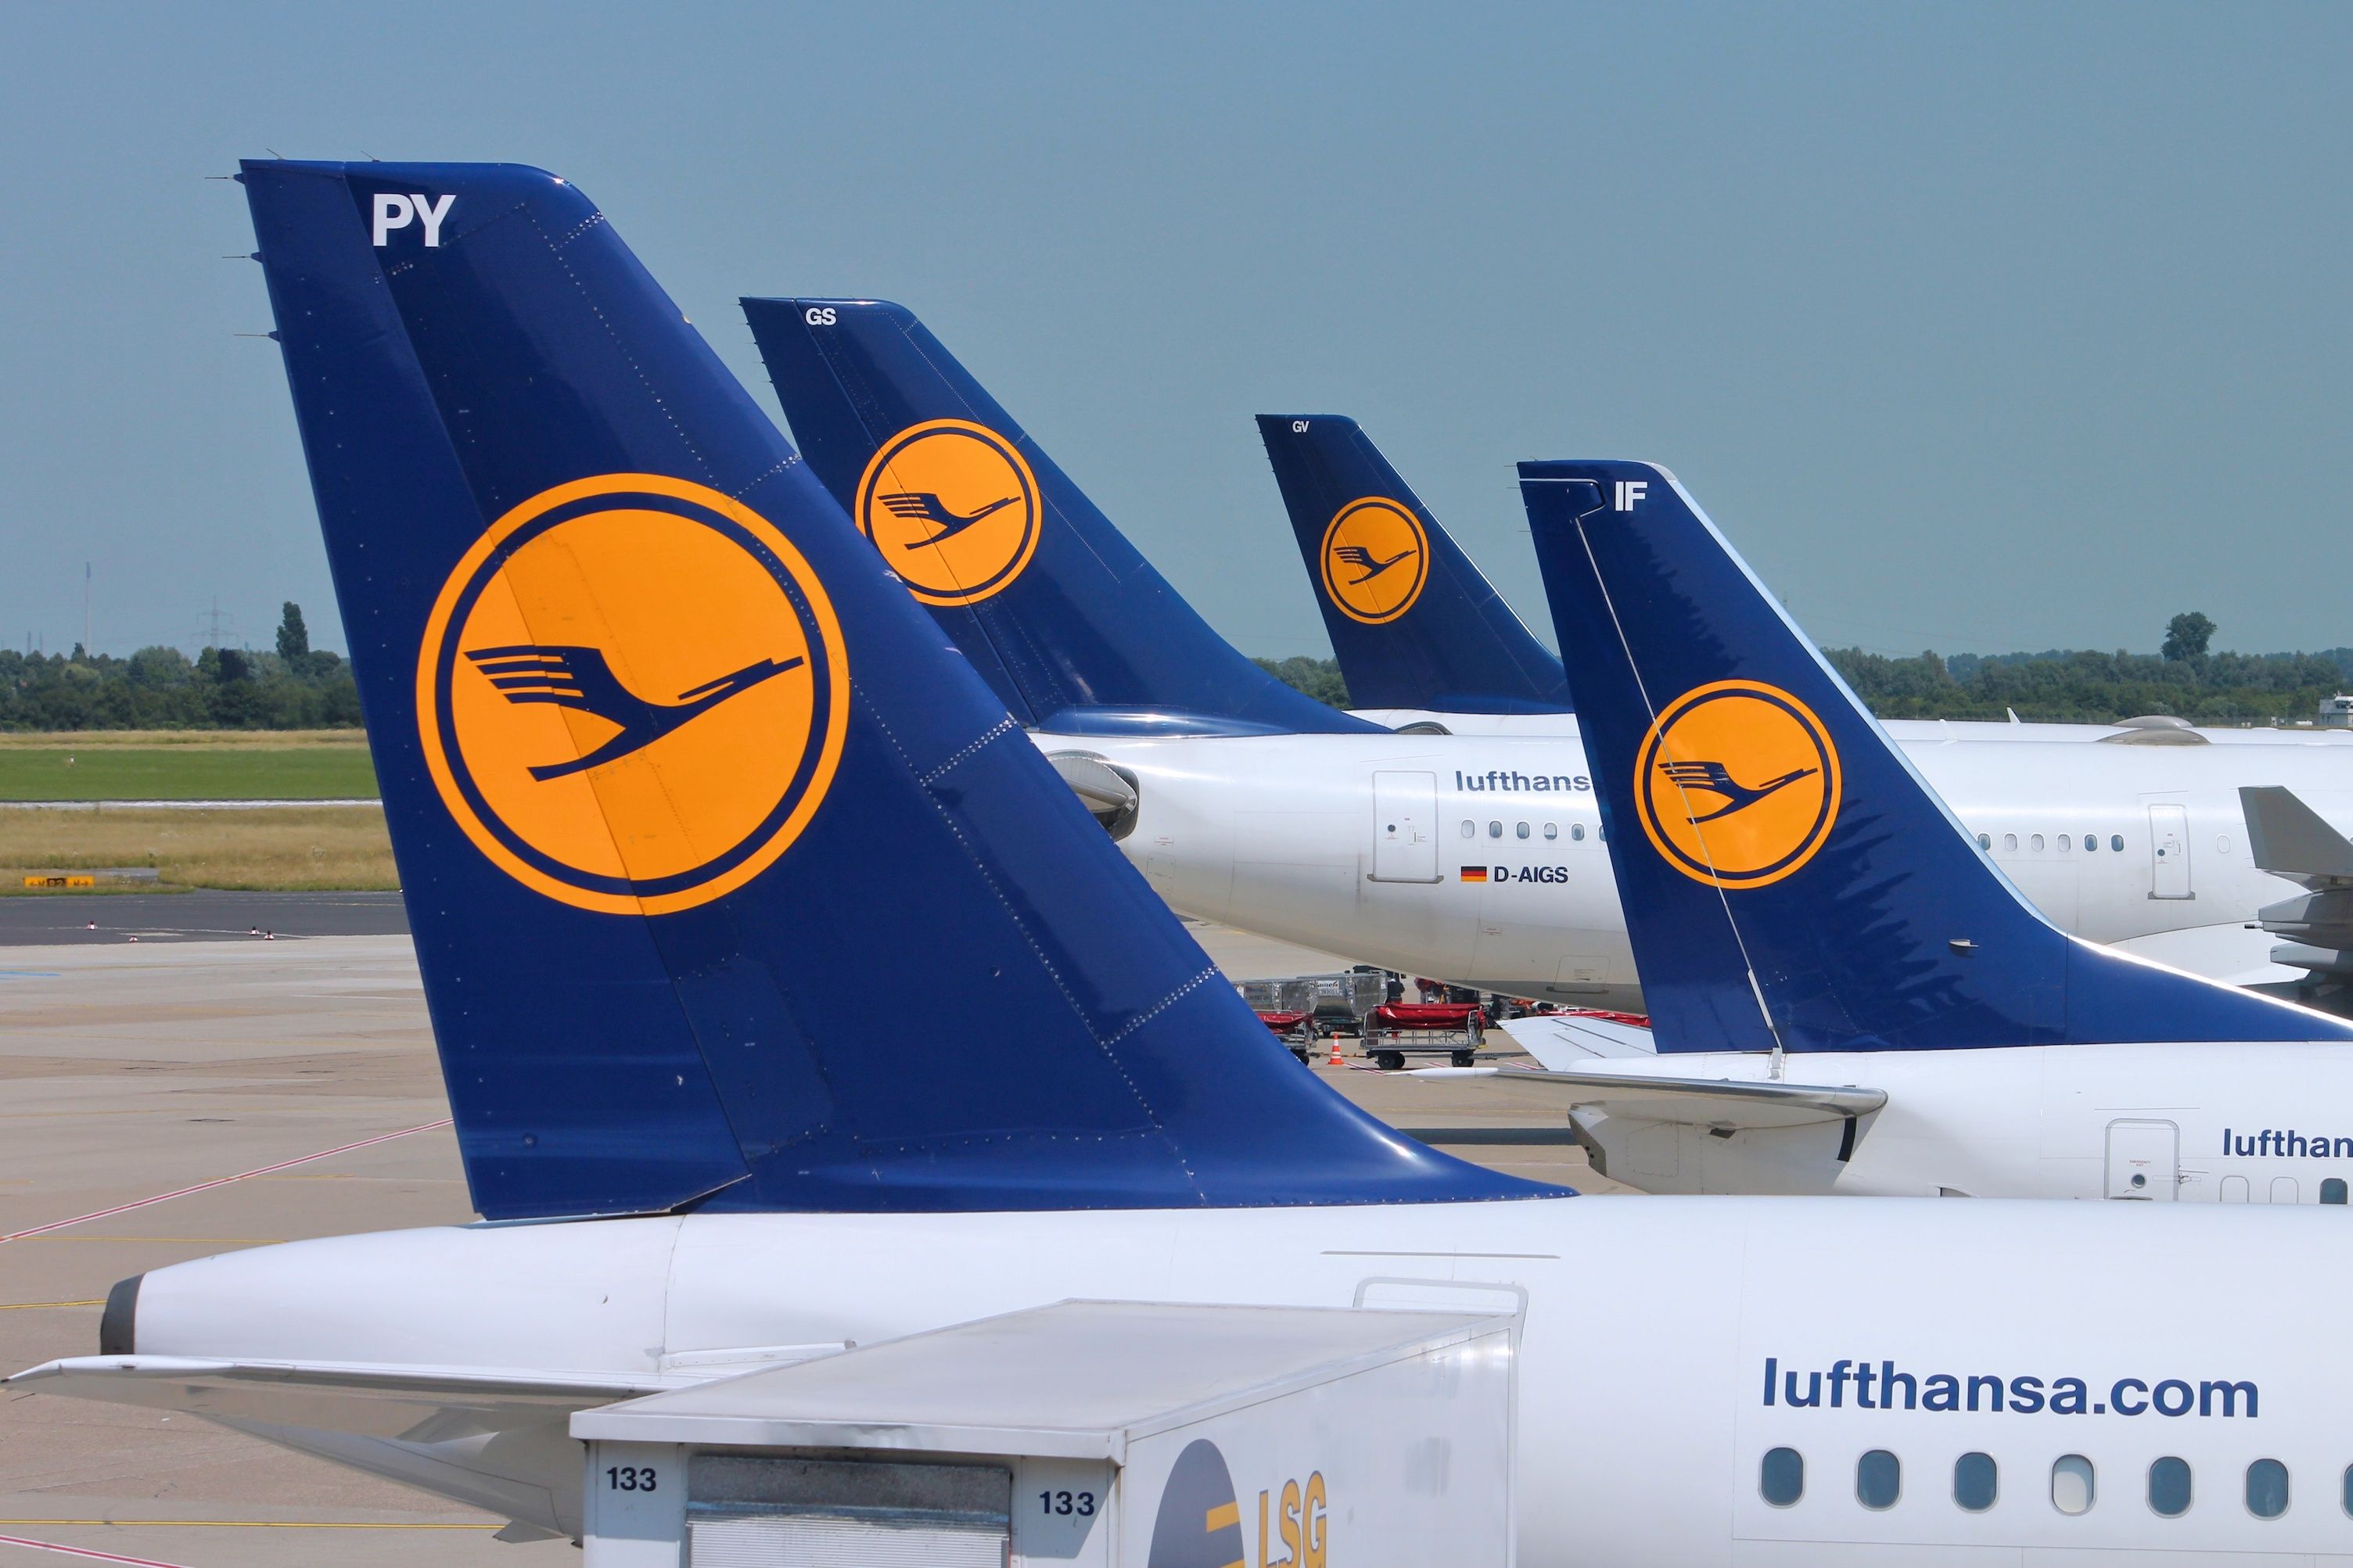 A Lufthansa aircraft fleet